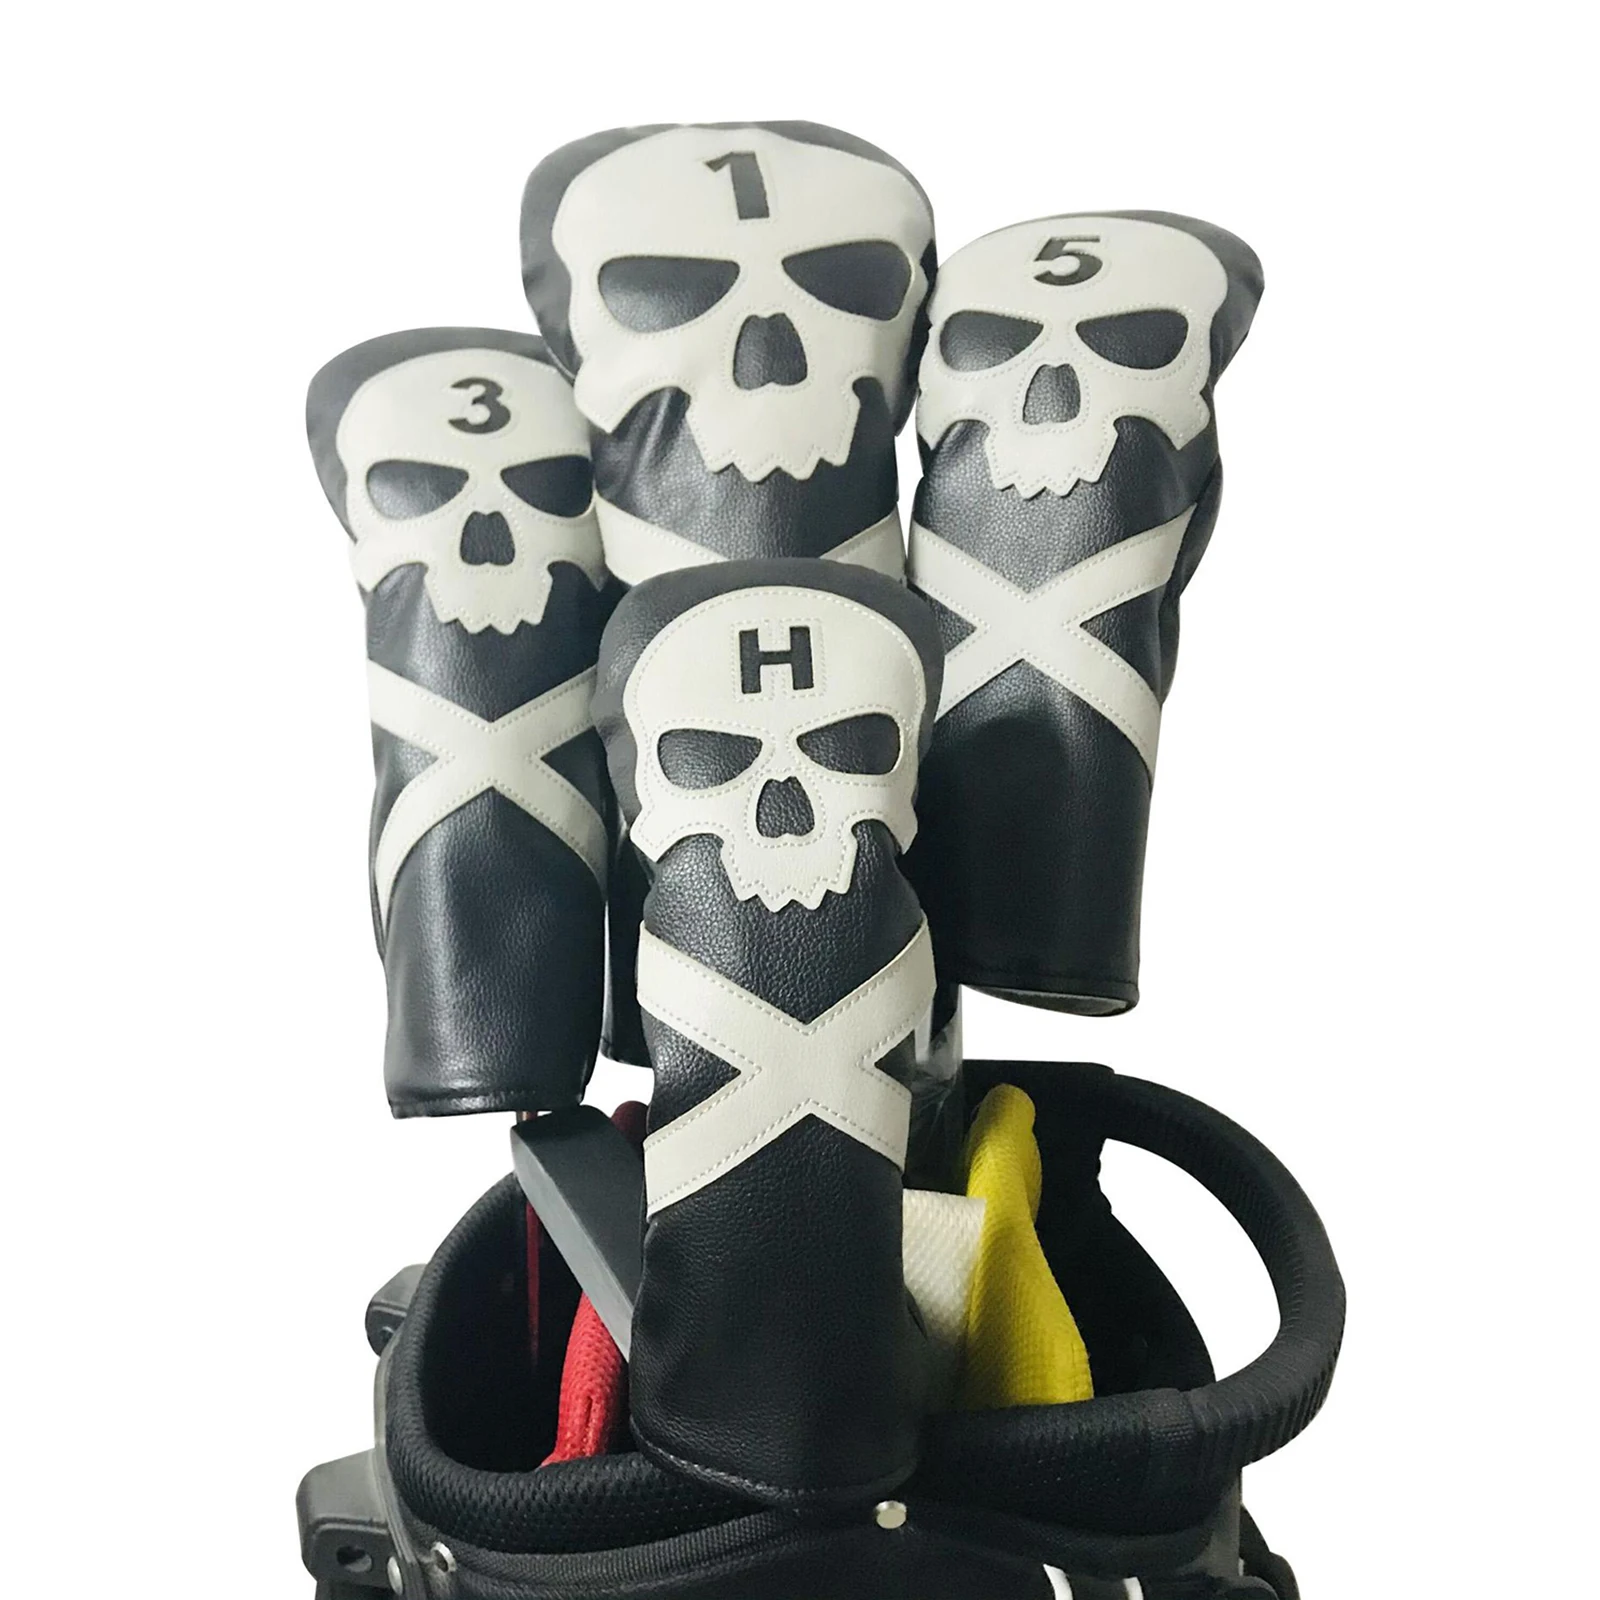 

4 шт. #1 #3 #5 UT деревянные головные уборы для гольф-клуба для водителя/лесопарда/гибридные искусственные головные уборы набор защитных чехлов